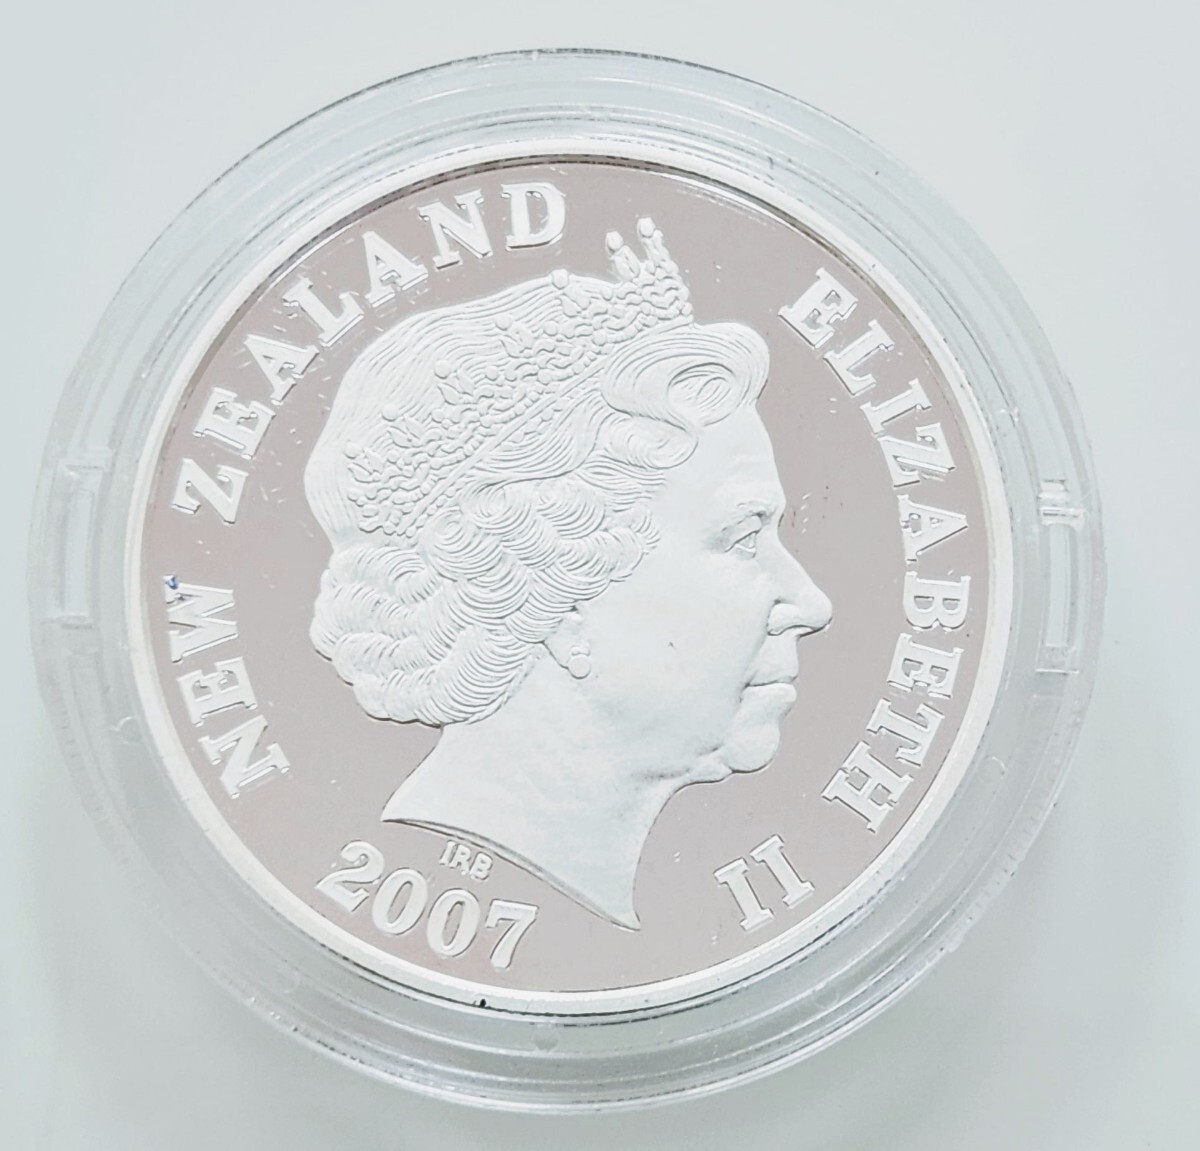 ◆◇ニュージーランド1ドルプルーフ銀貨幣 アオラキ マウント クック プルーフ貨幣セット 2007年 記念 銀貨◇◆_画像2